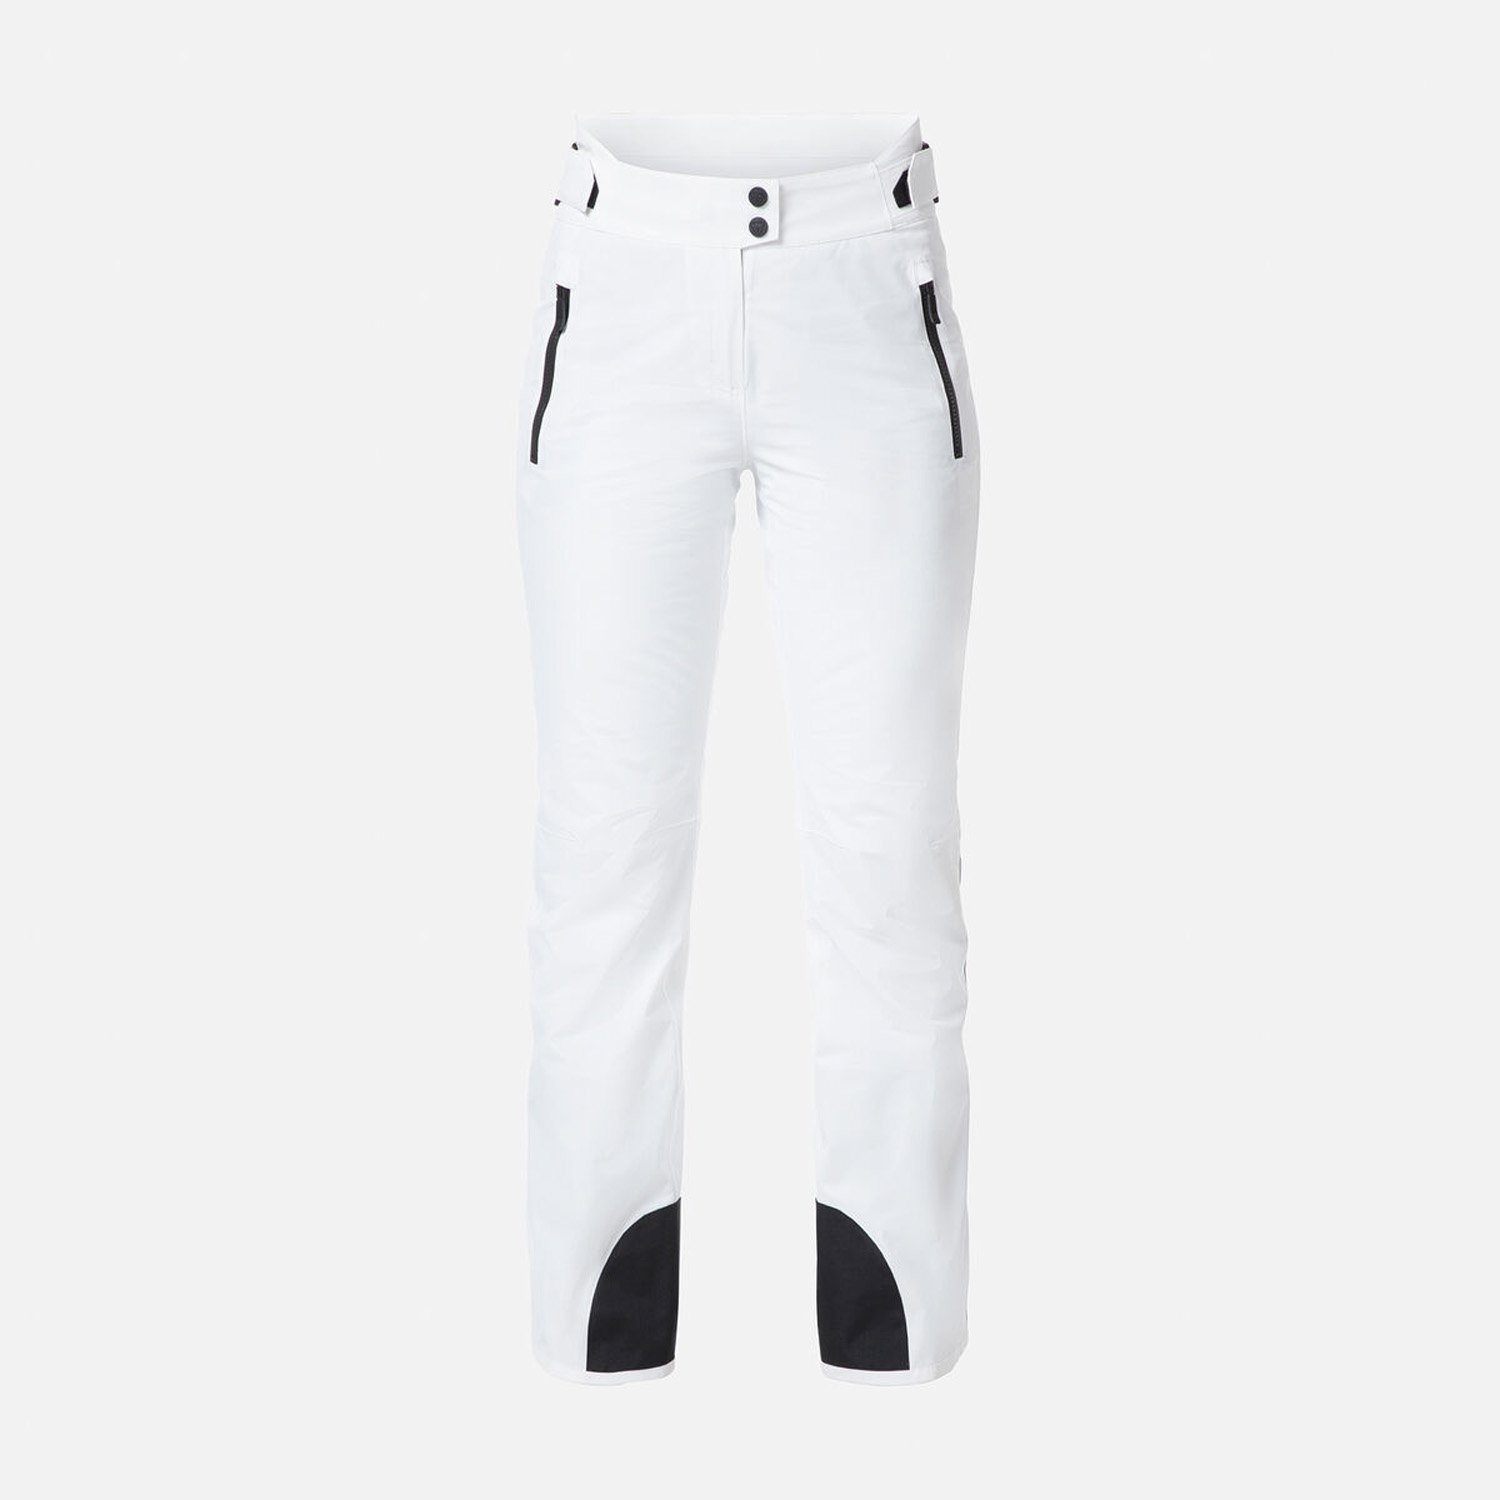 Rossignol Straro STR Kadın Kayak Pantolonu - Beyaz - 1